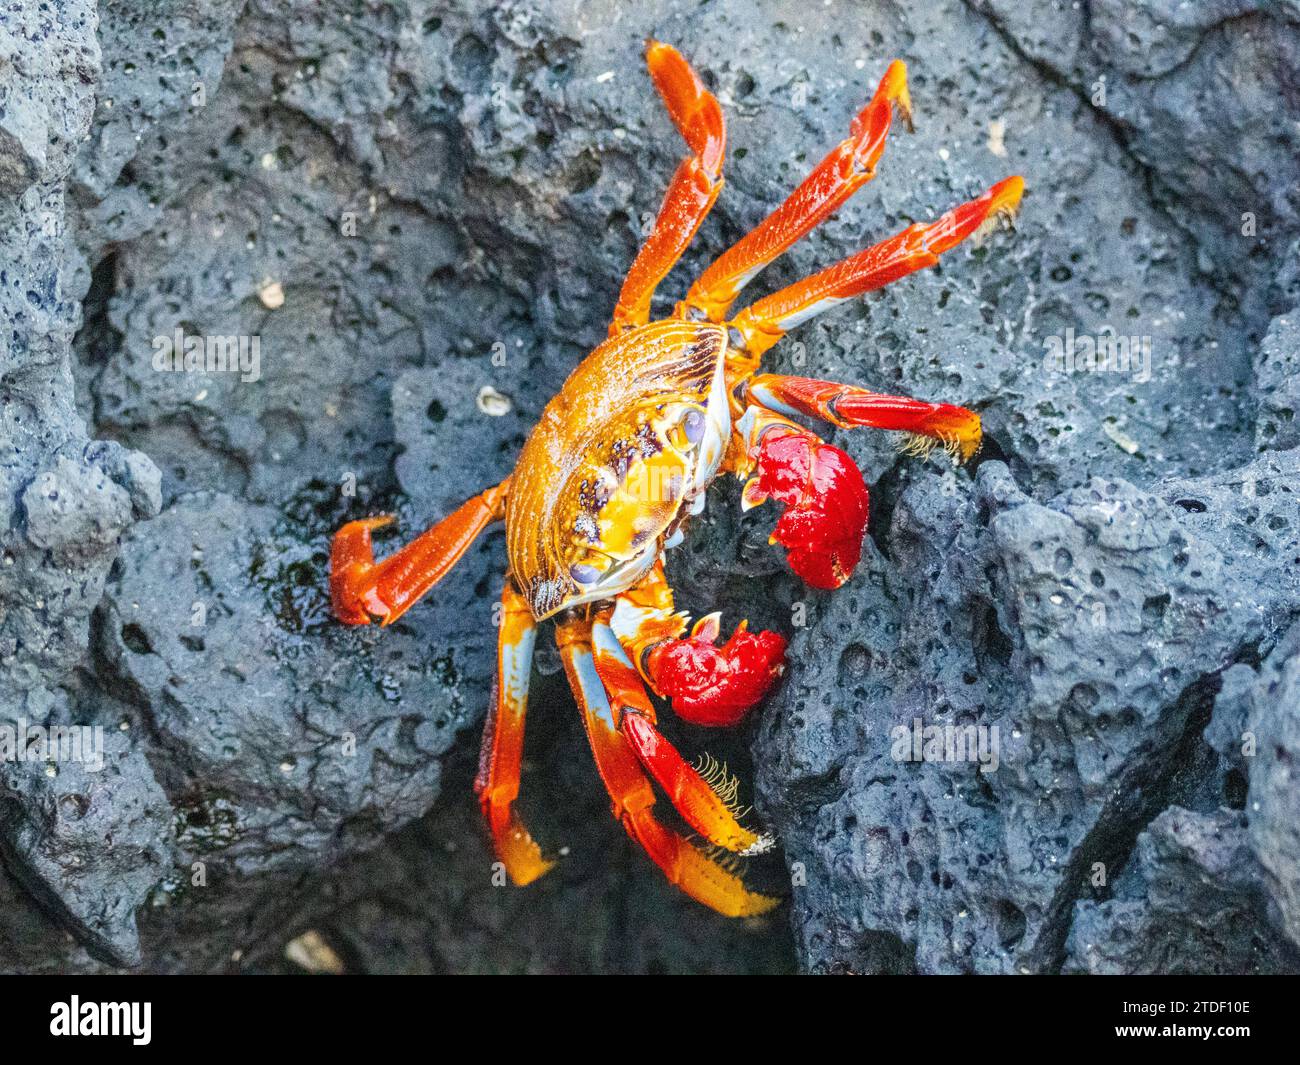 Un crabe Sally lightfoot adulte (Grapsus grapsus), à Baltra, plage de Bacha sur l'île de Santa Cruz, Galapagos, site du patrimoine mondial de l'UNESCO, Équateur Banque D'Images